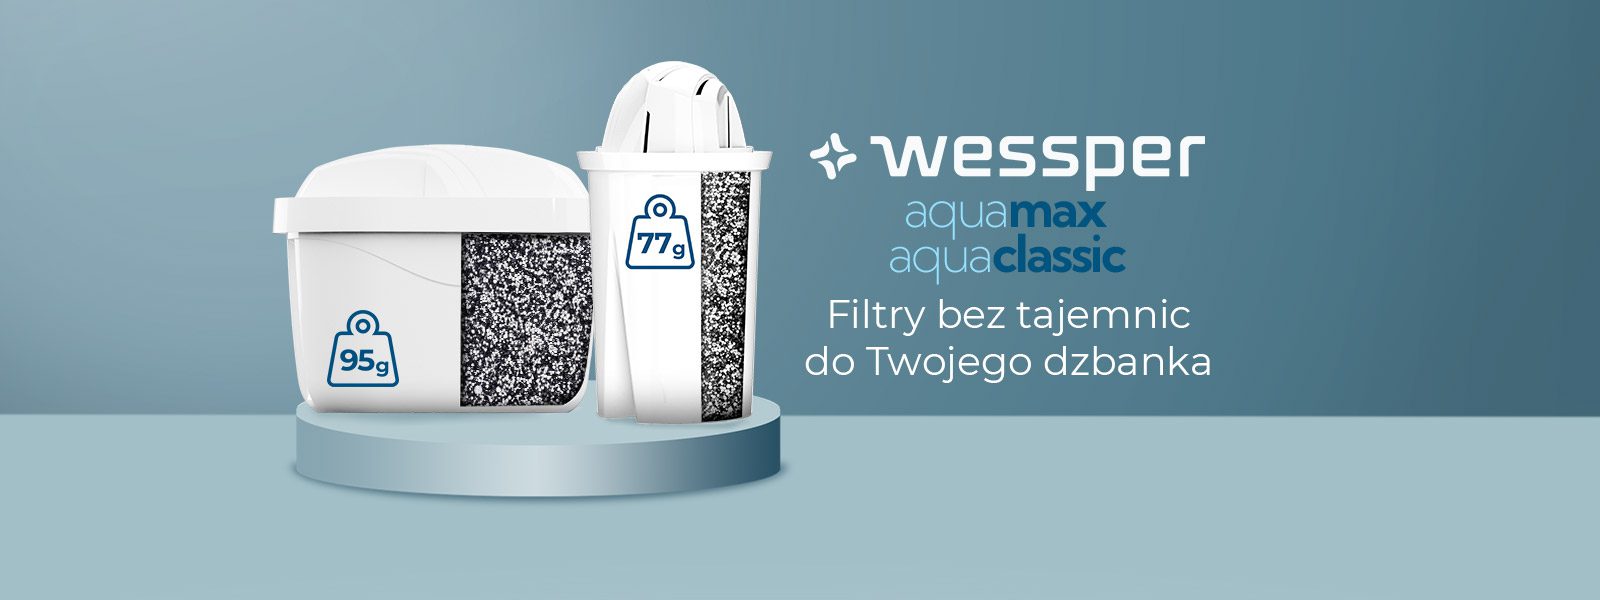 Filtry wessper aquamax aquaclassic standard